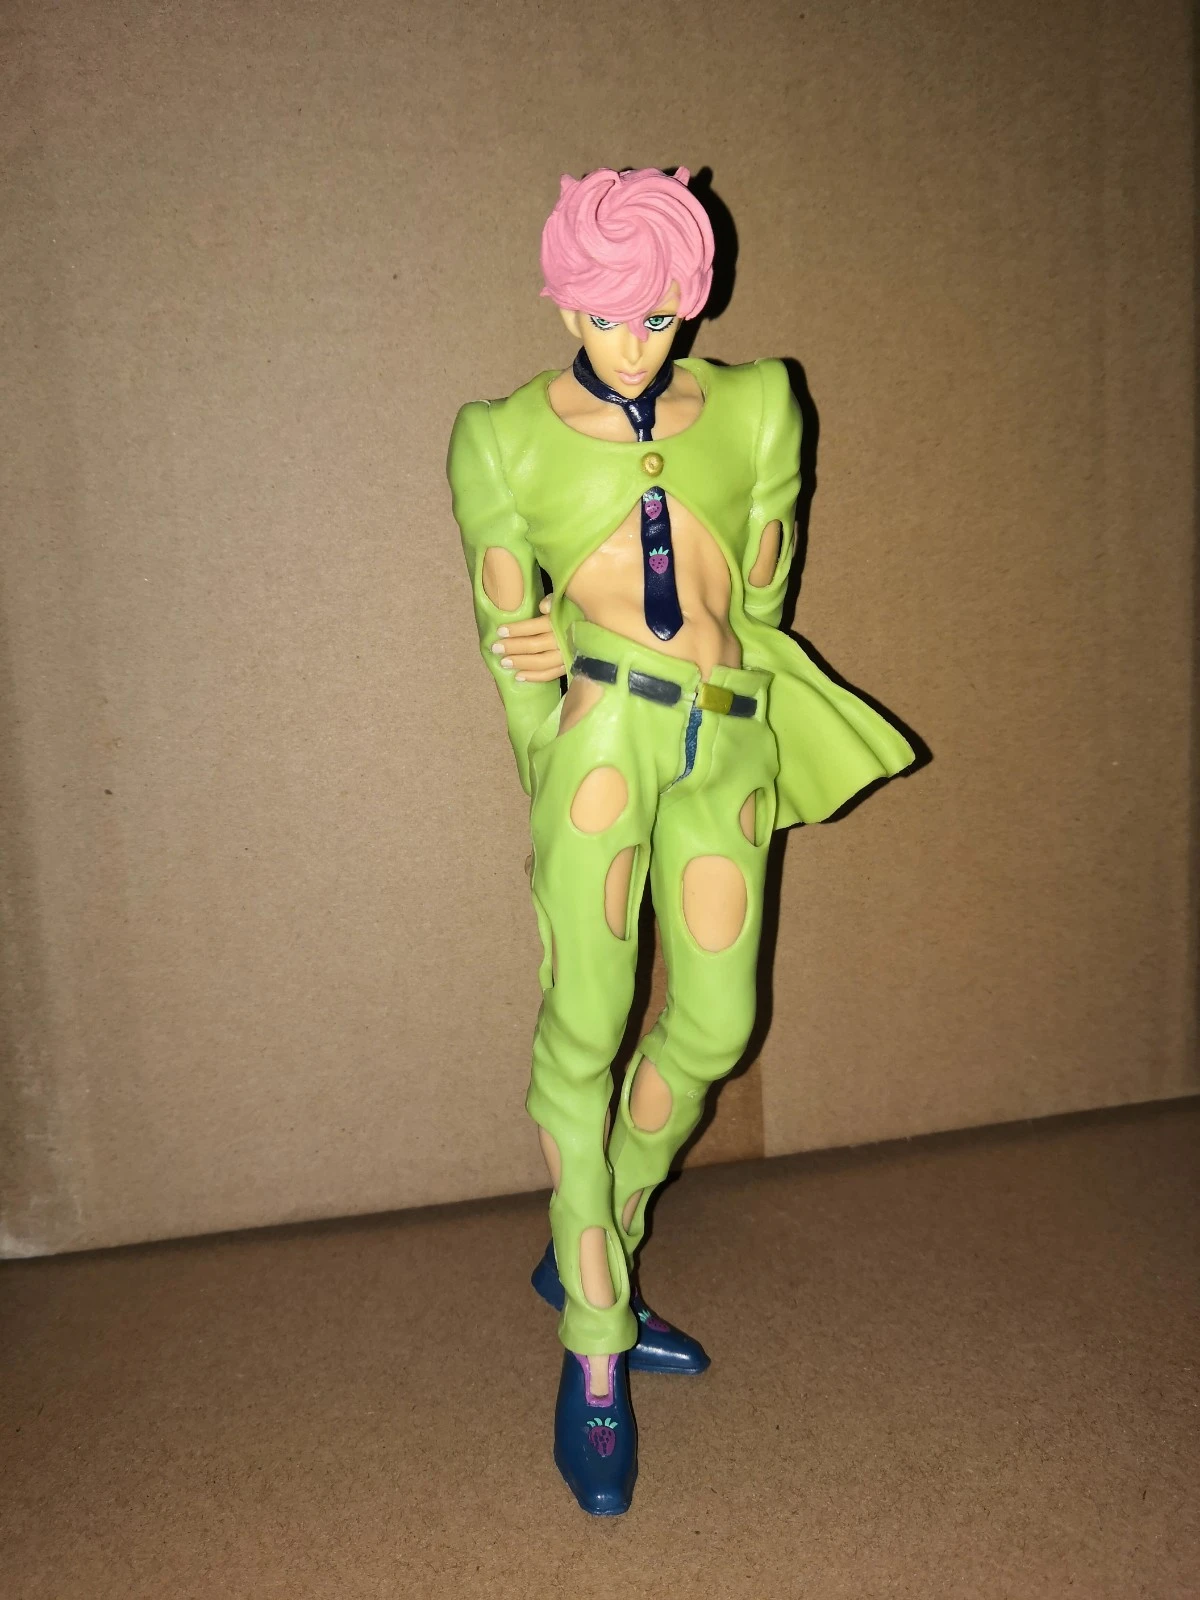 ジョジョの奇妙な冒険アクションフィギュア玩具スパイスガール人形 Action Figures Aliexpress